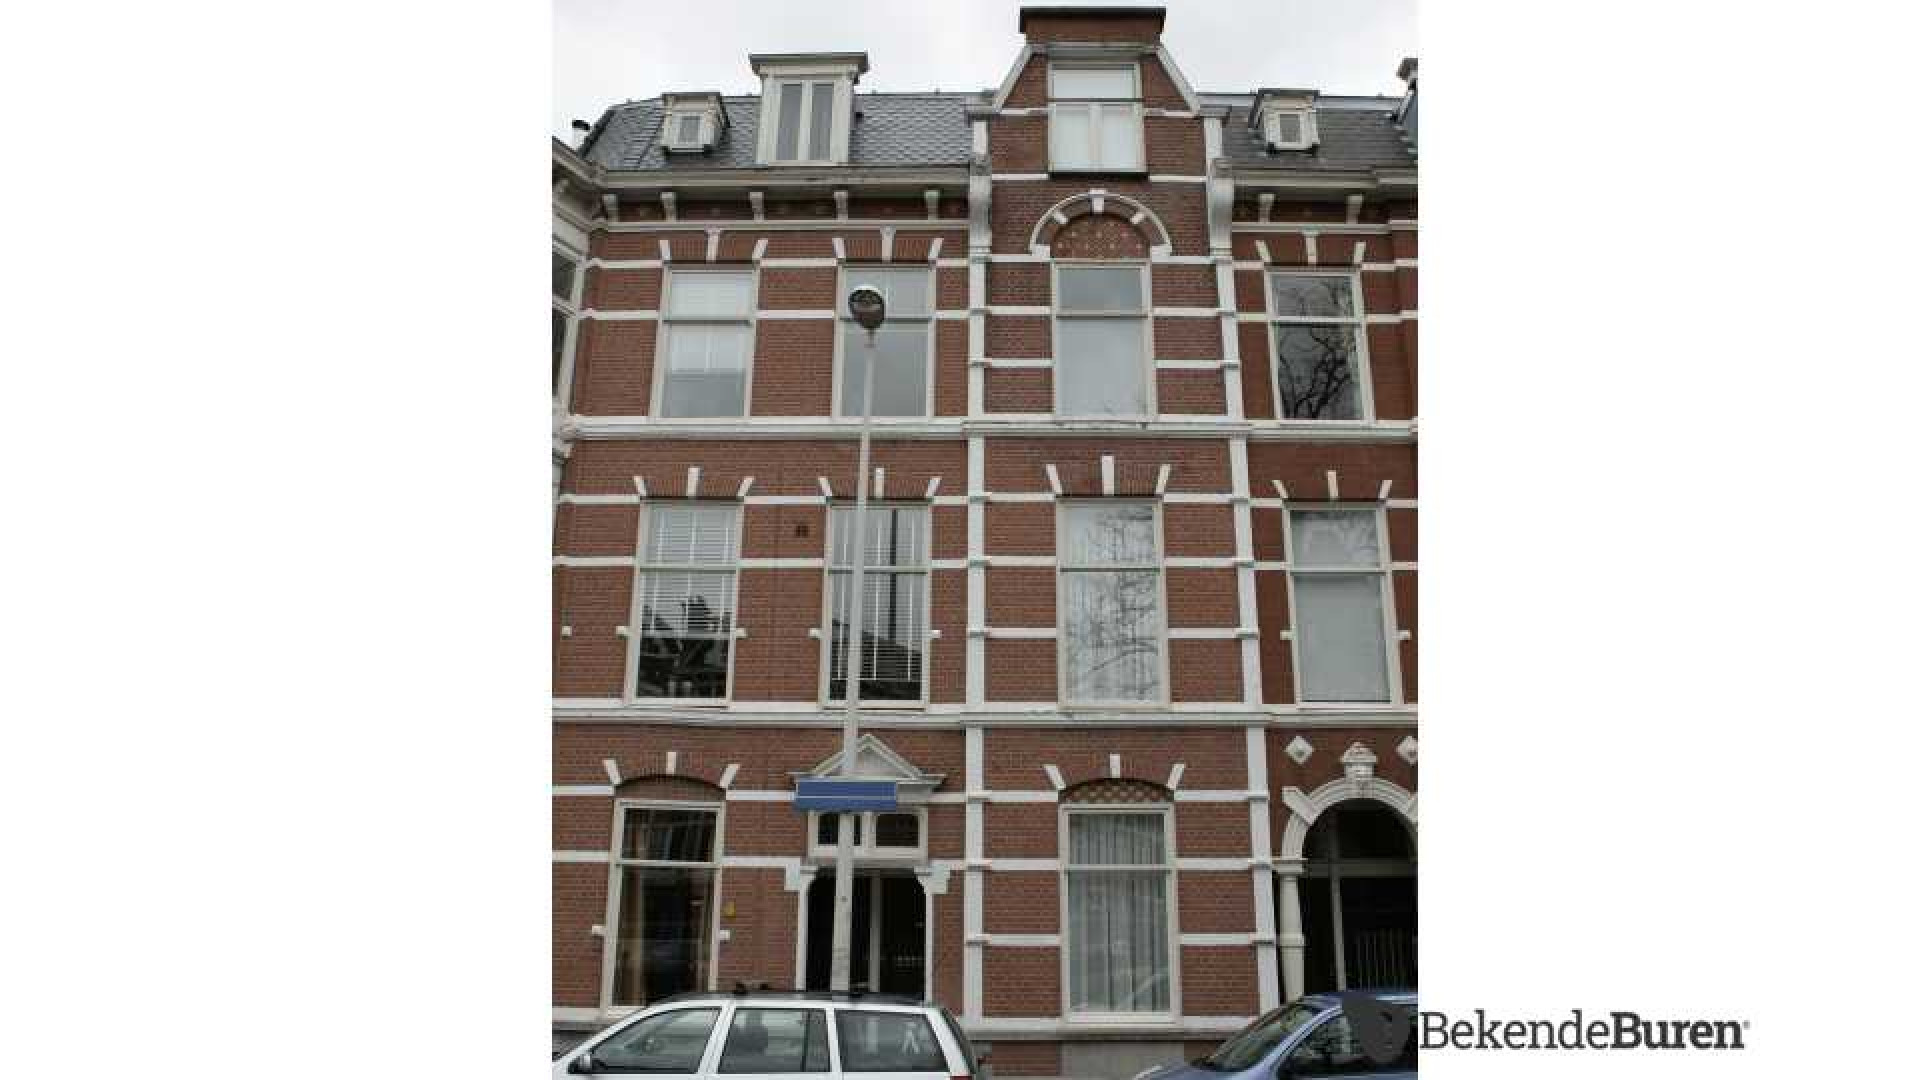 Dennis Storm verkoopt zijn Haagse dubbele bovenhuis. Zie foto's 1